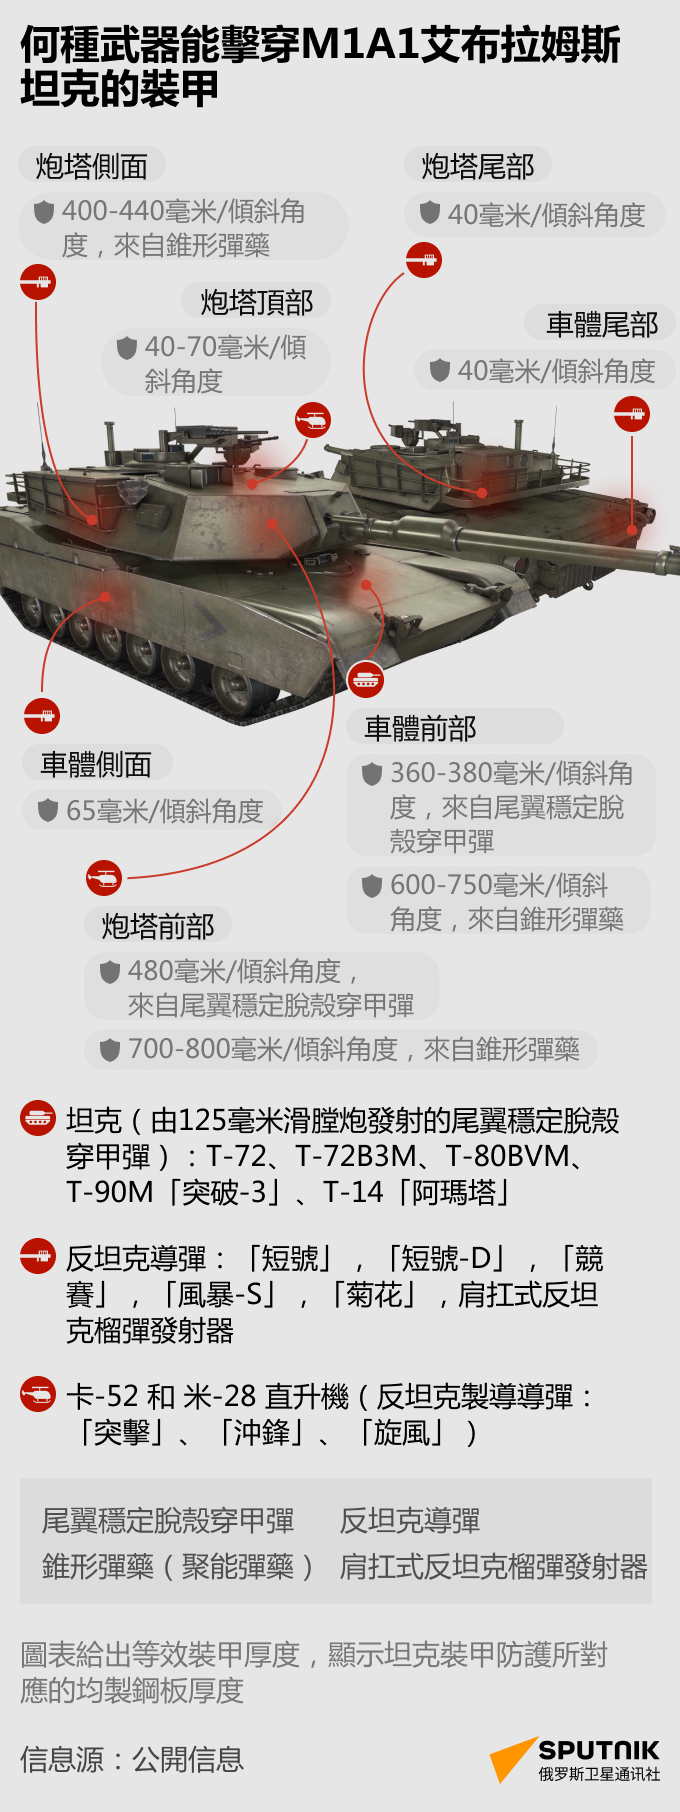 何種武器能擊穿M1A1艾布拉姆斯坦克的裝甲 - 俄羅斯衛星通訊社